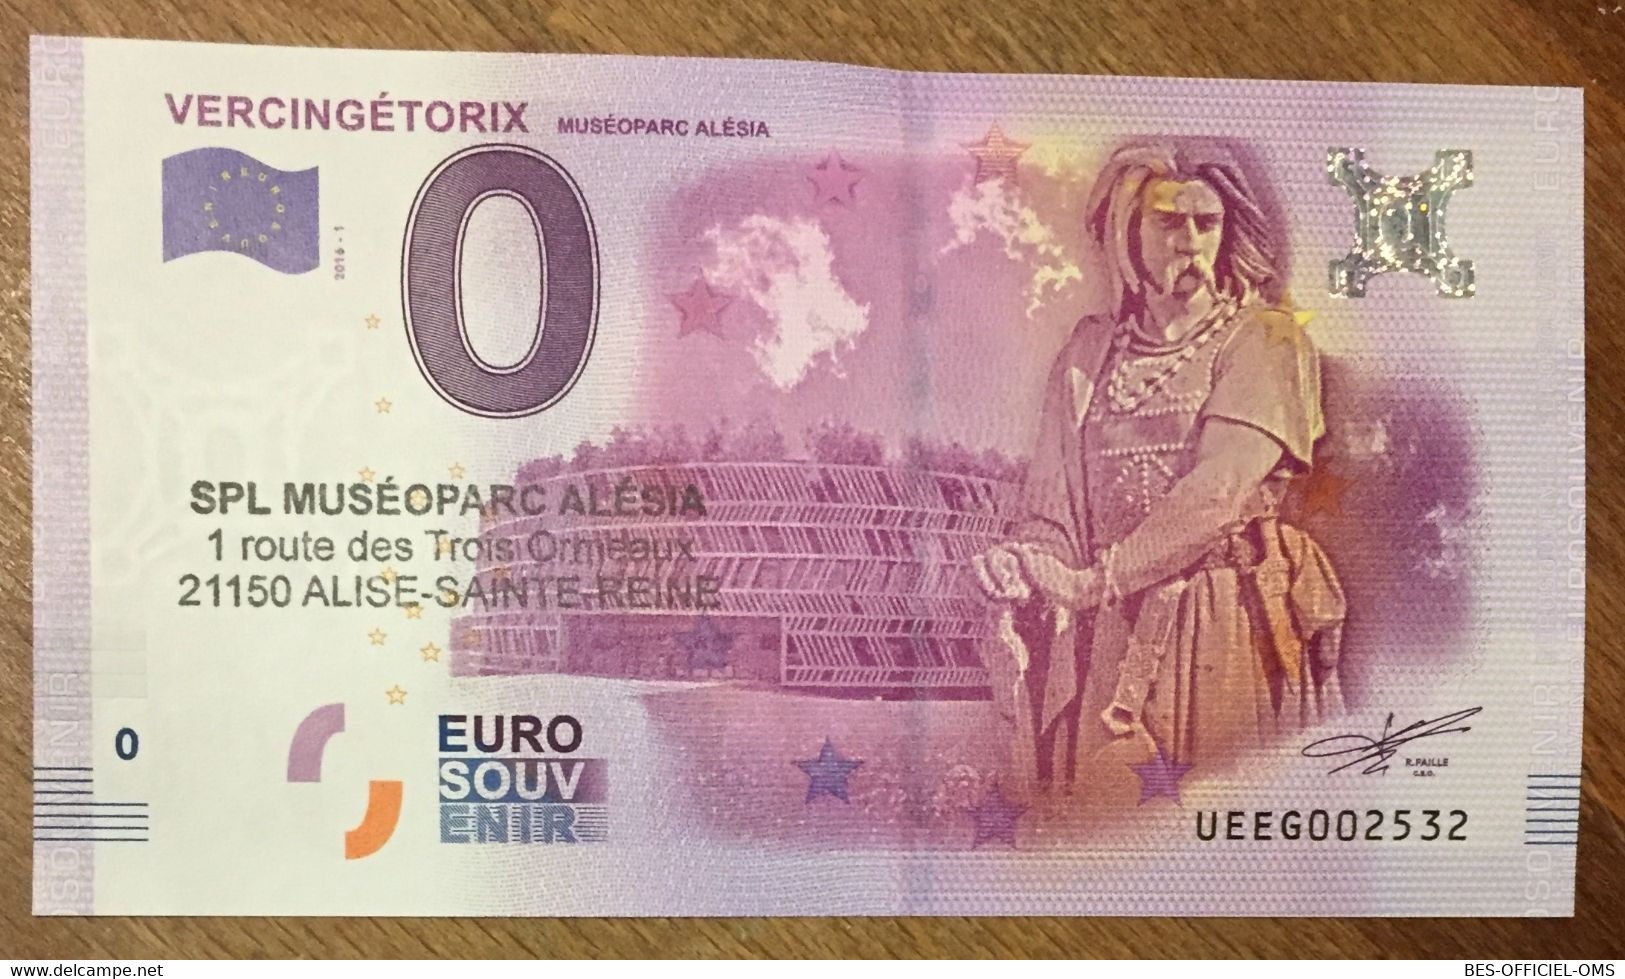 2016 BILLET 0 EURO SOUVENIR DPT 21 VERCINGETORIX MUSÉOPARC ALÉSIA + TAMPON ZERO EURO SCHEIN BANKNOTE PAPER MONEY BANK - Essais Privés / Non-officiels